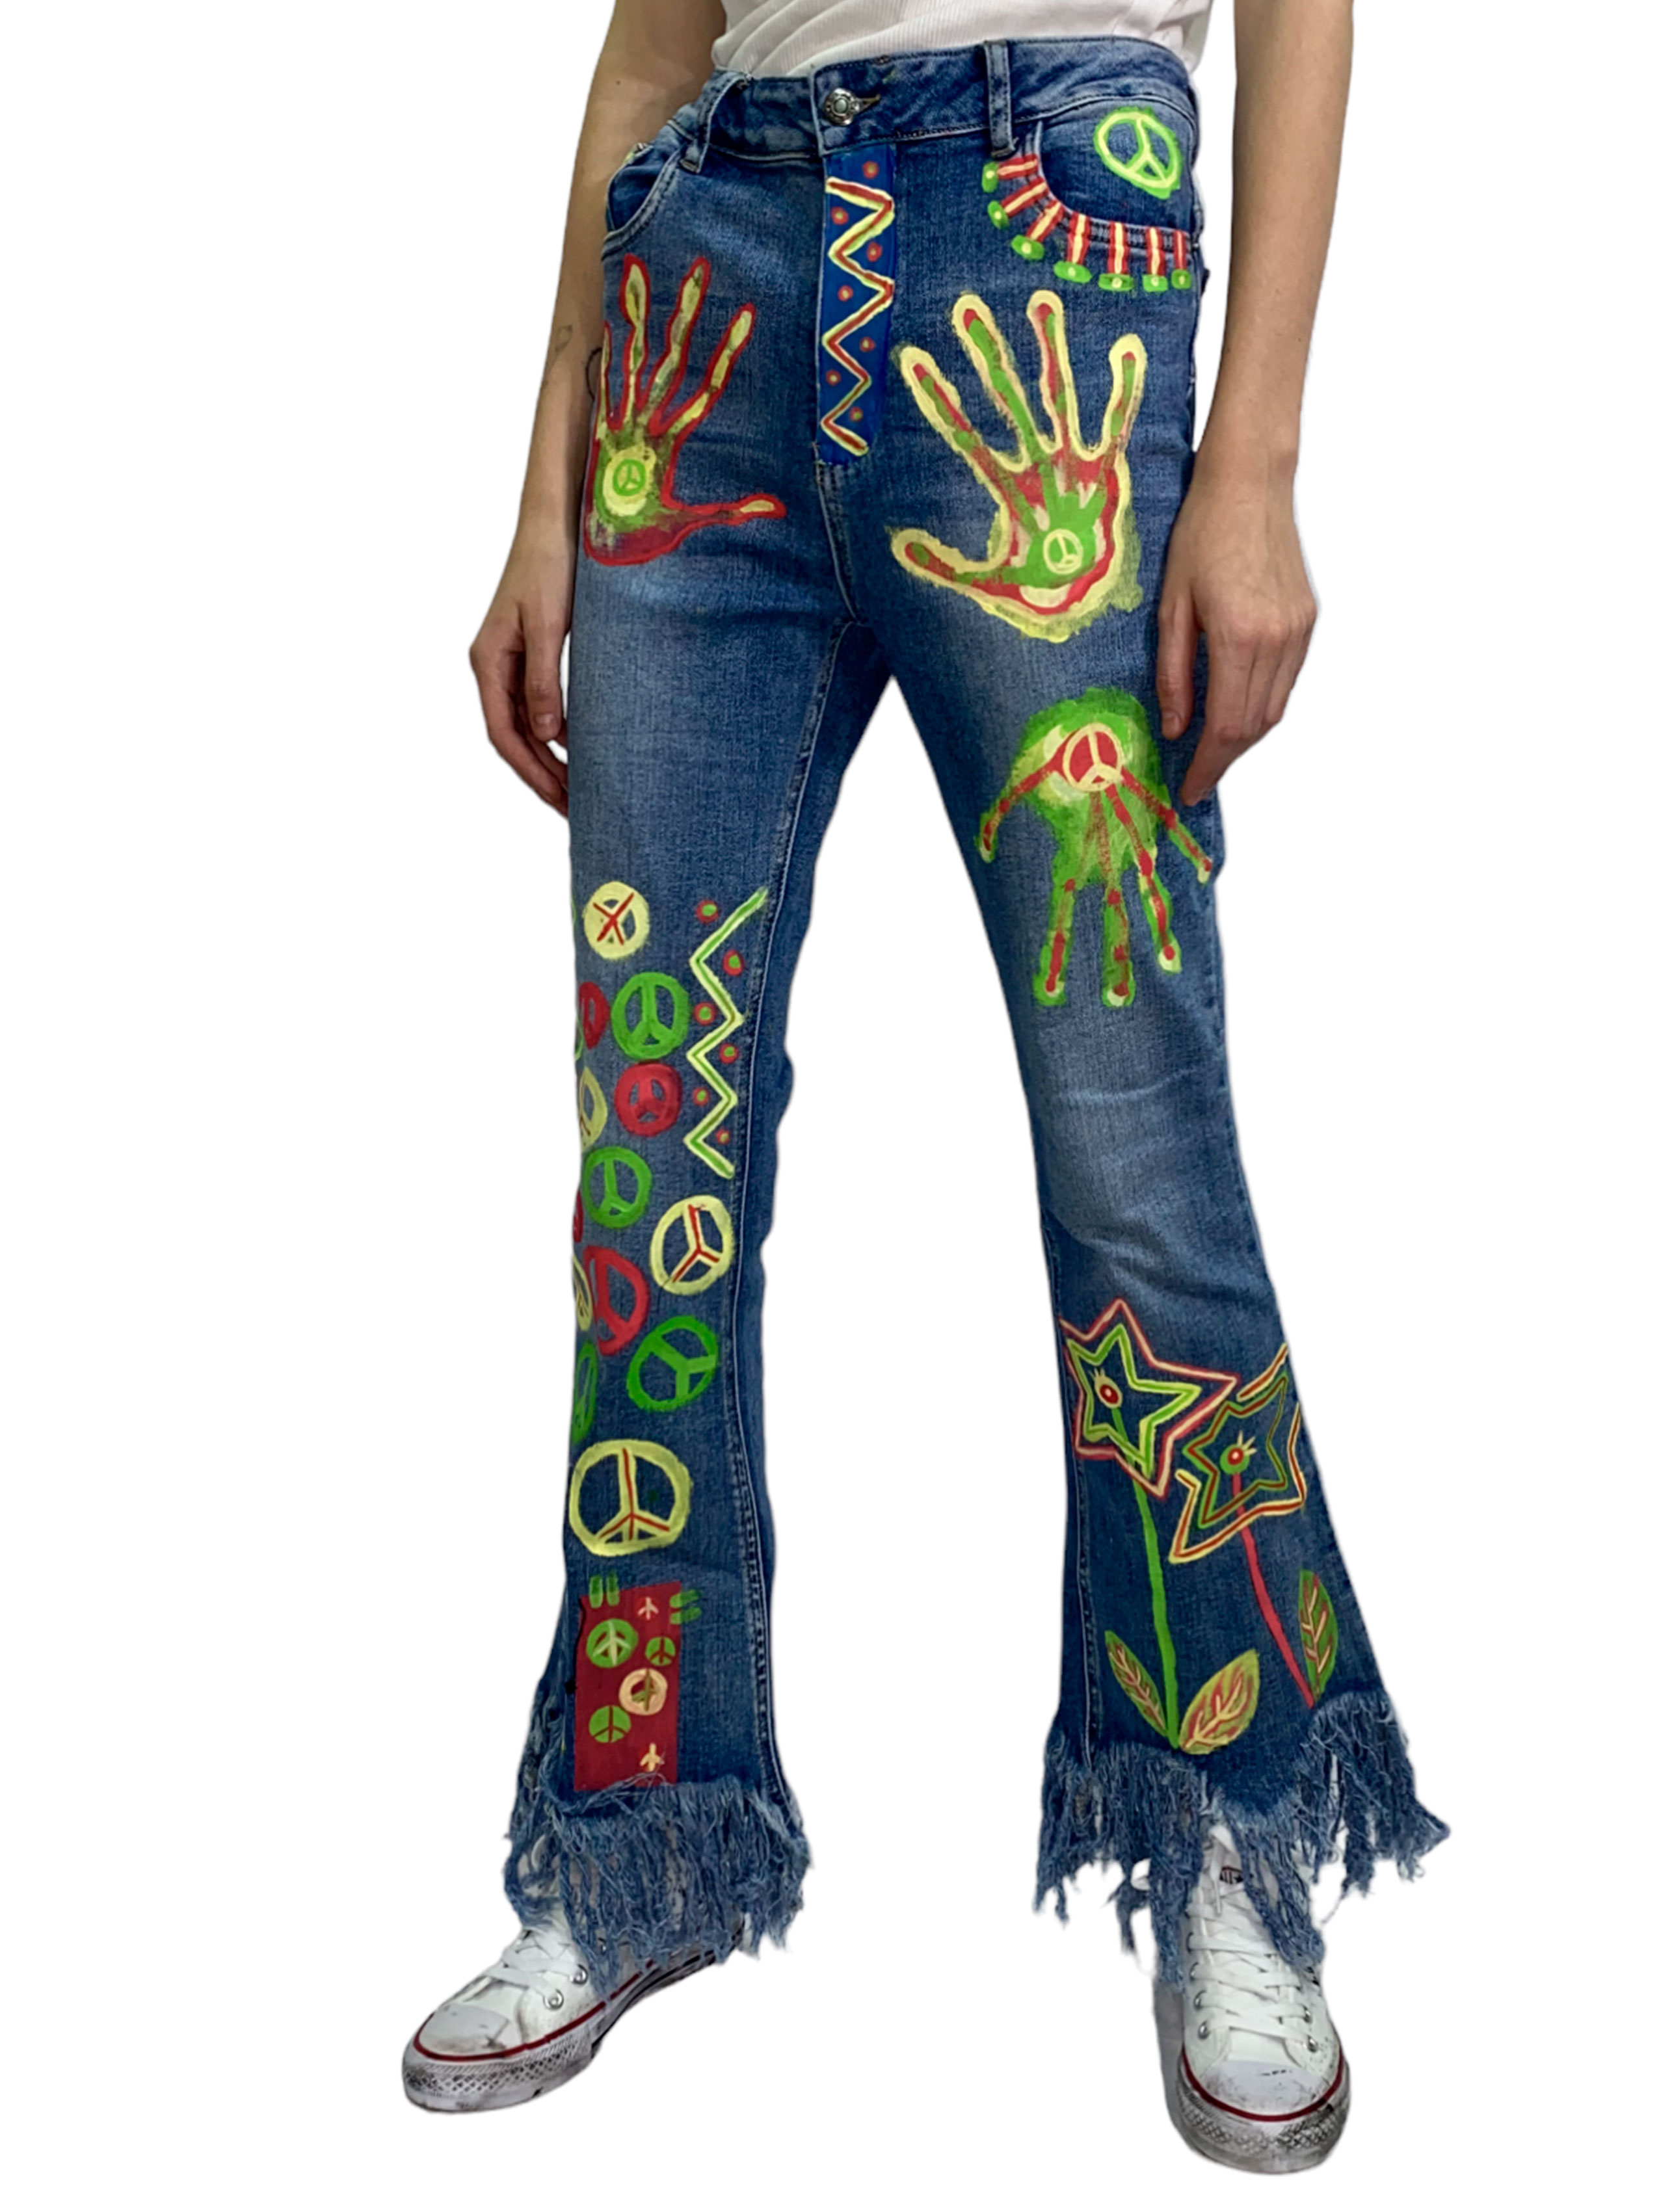 Кастомные джинсы клеш Hippie Flowers - фото 1 - rockbunker.ru